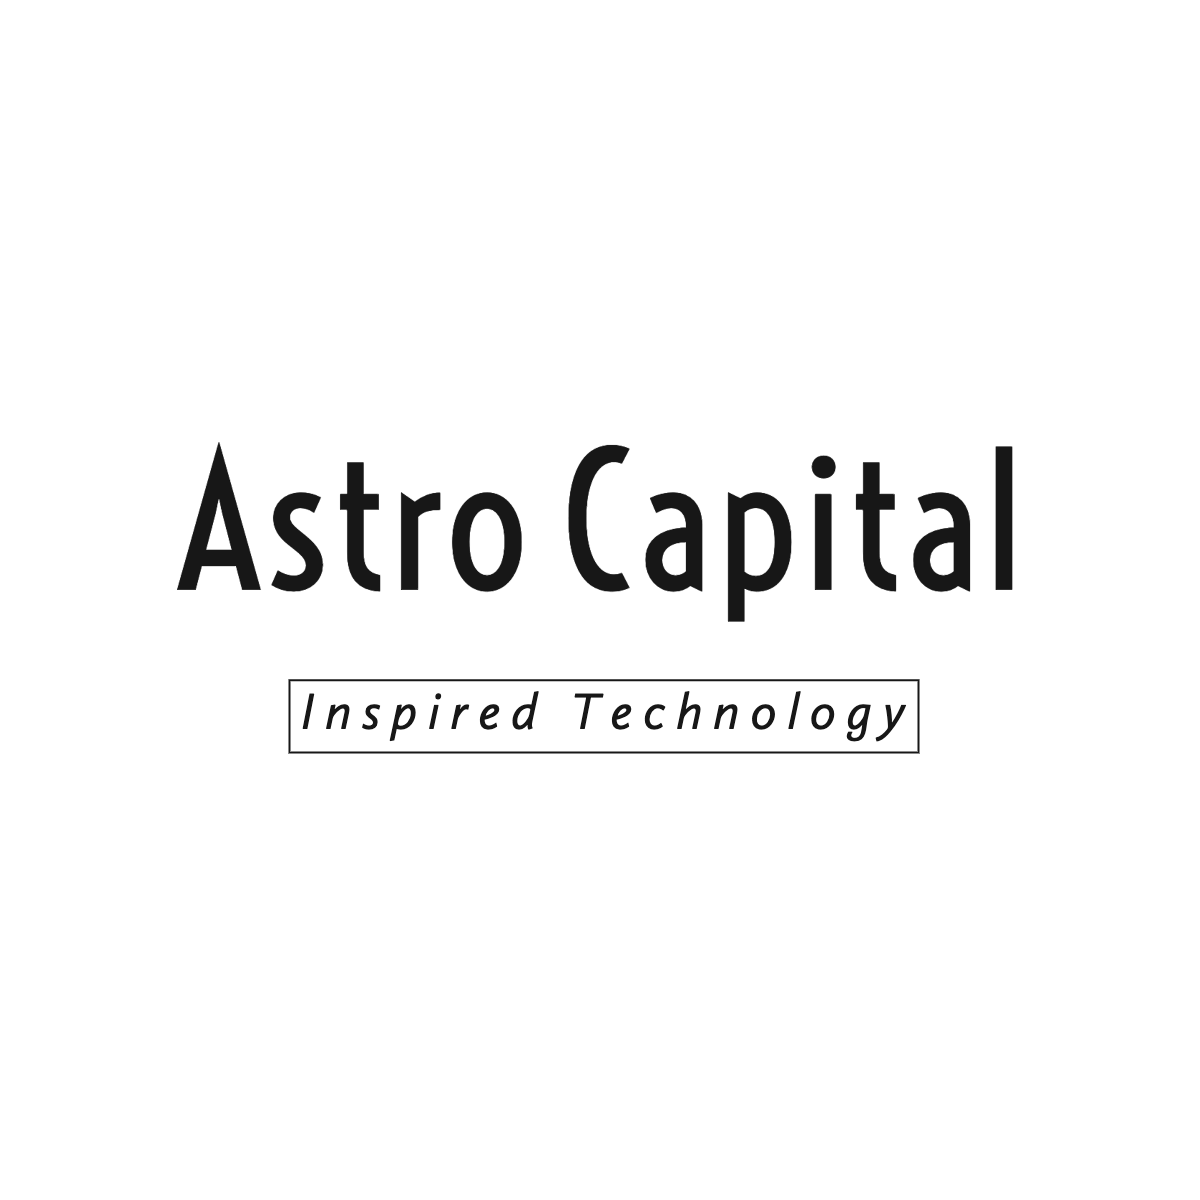 Astro Capital